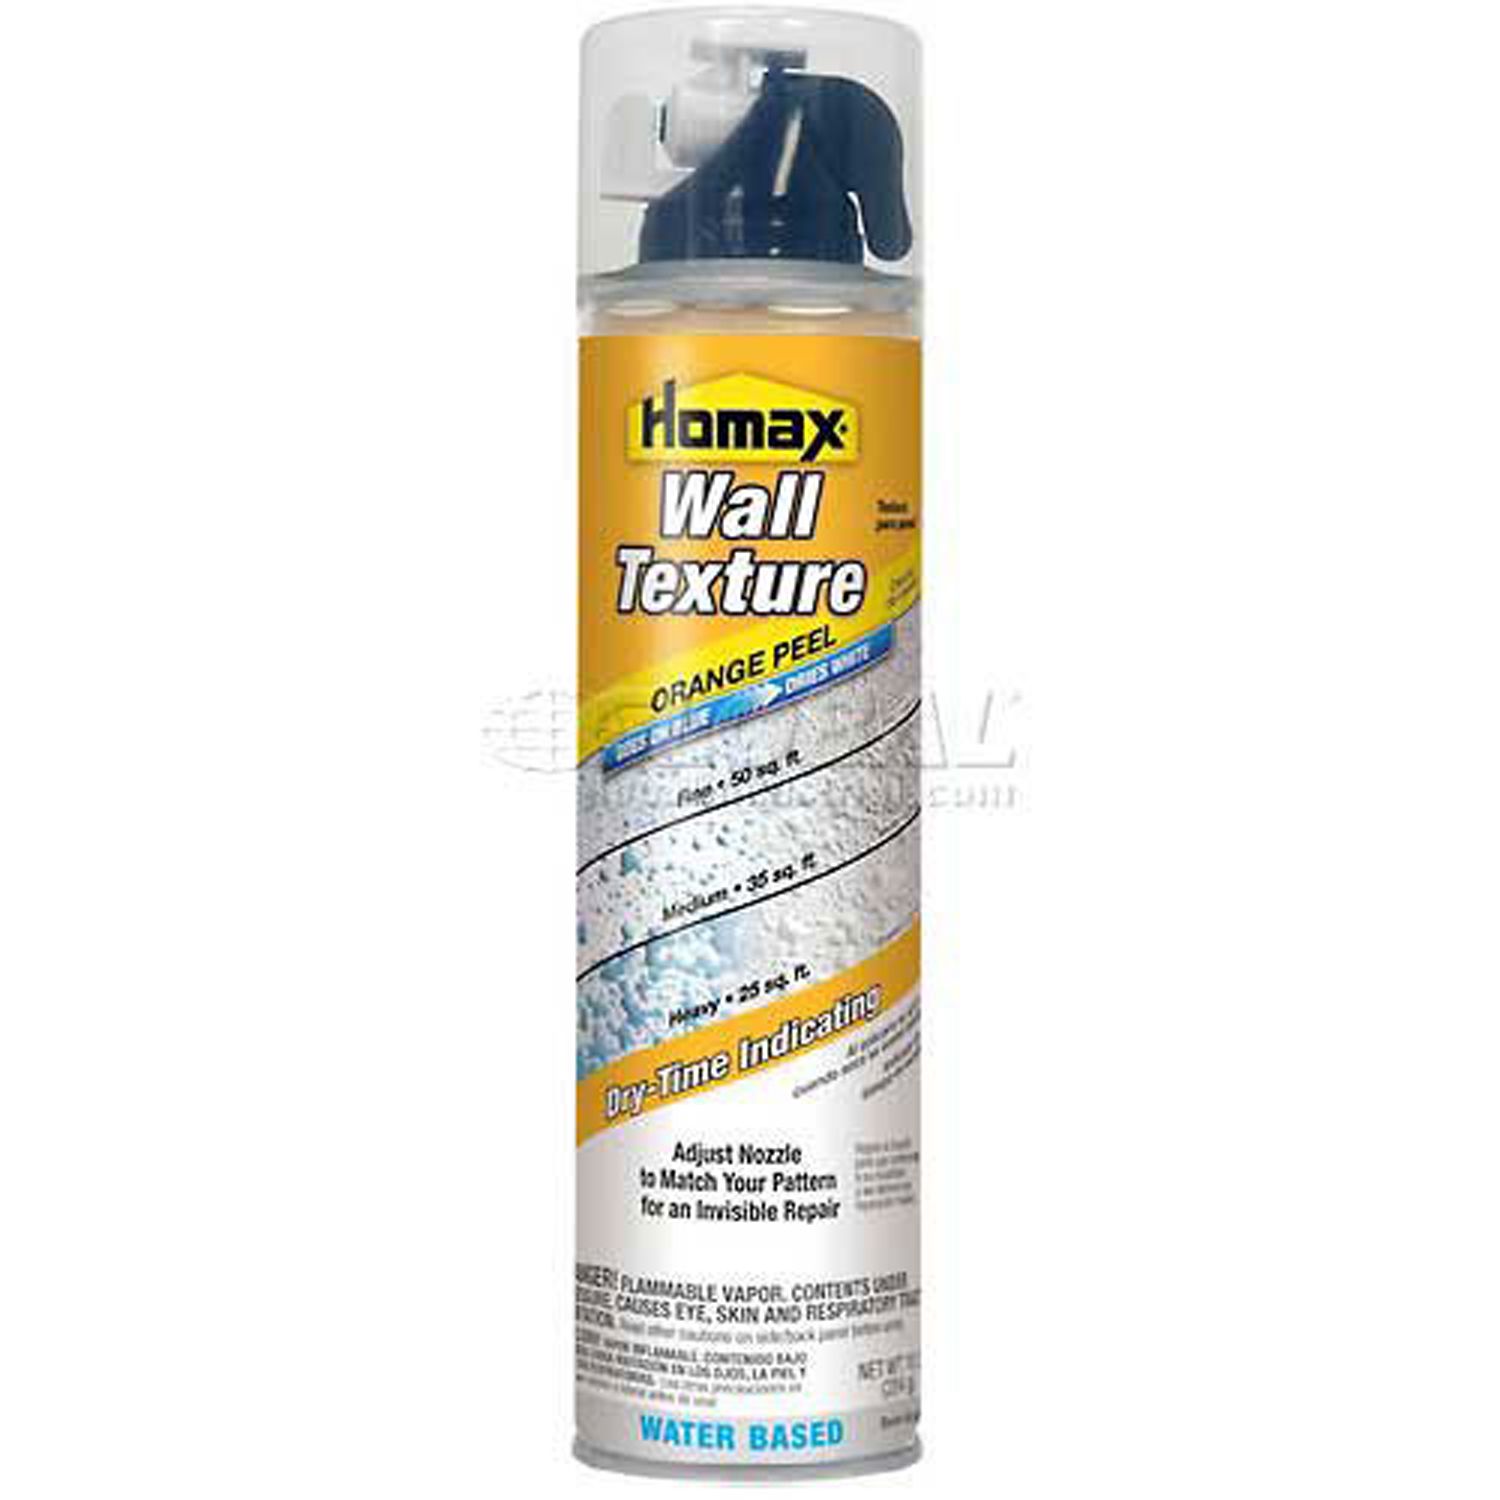 Homax Wall Texture